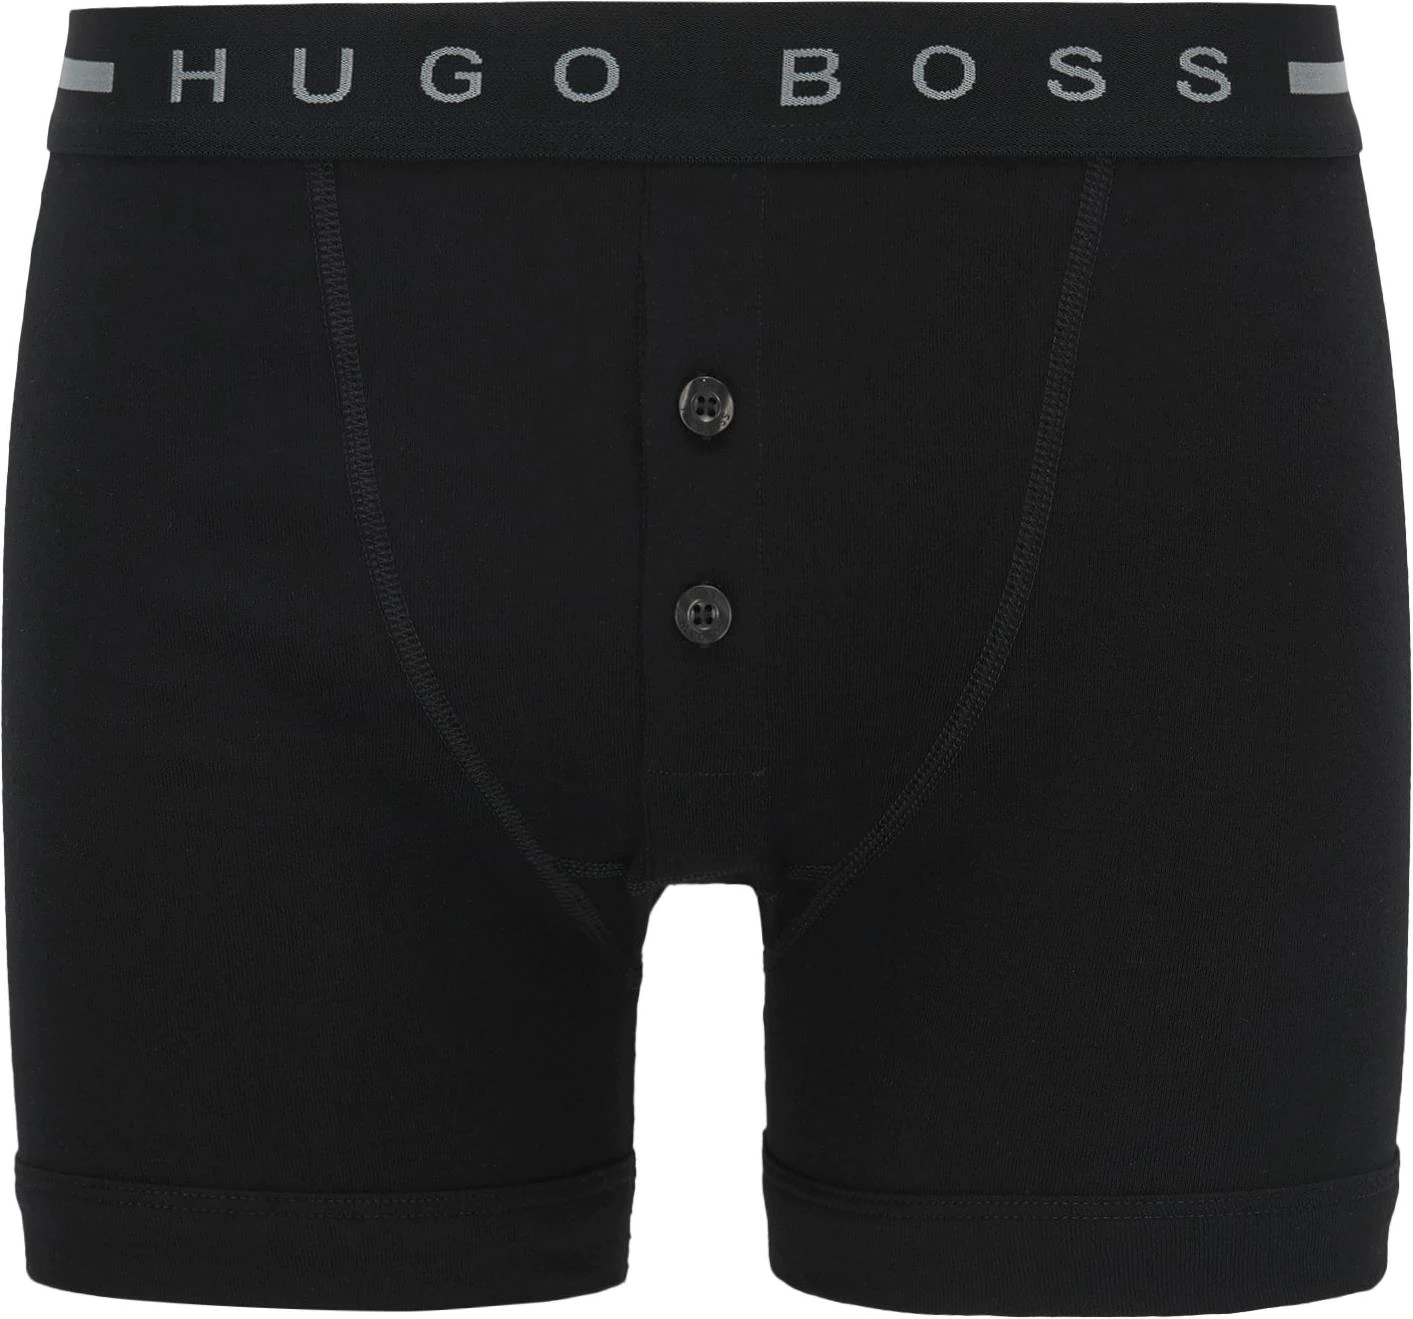 Hugo Boss Trunk